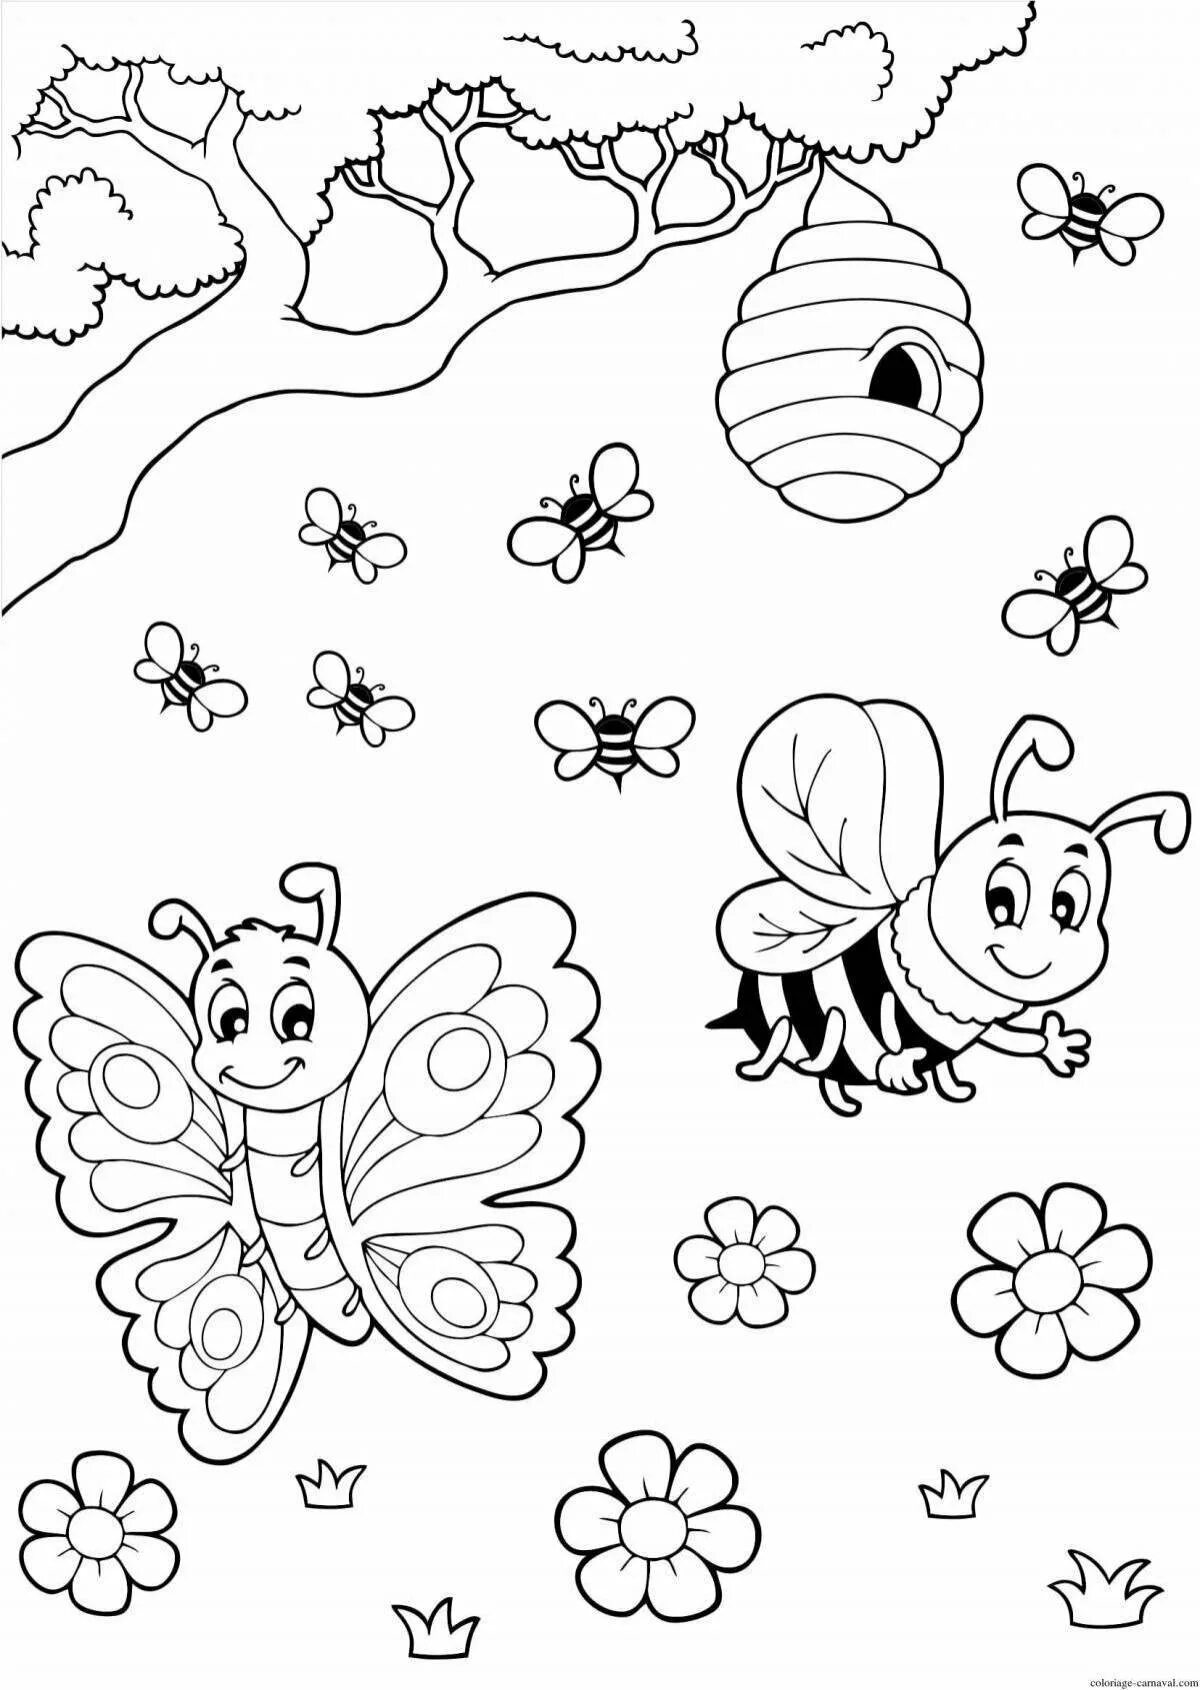 Раскраски для детей 3 лет насекомые. Насекомые раскраска для детей. Раскраска насекомые для малышей. Раскраски насекомые для детей 4-5 лет. Раскраска для детей 3 лет насекомые.